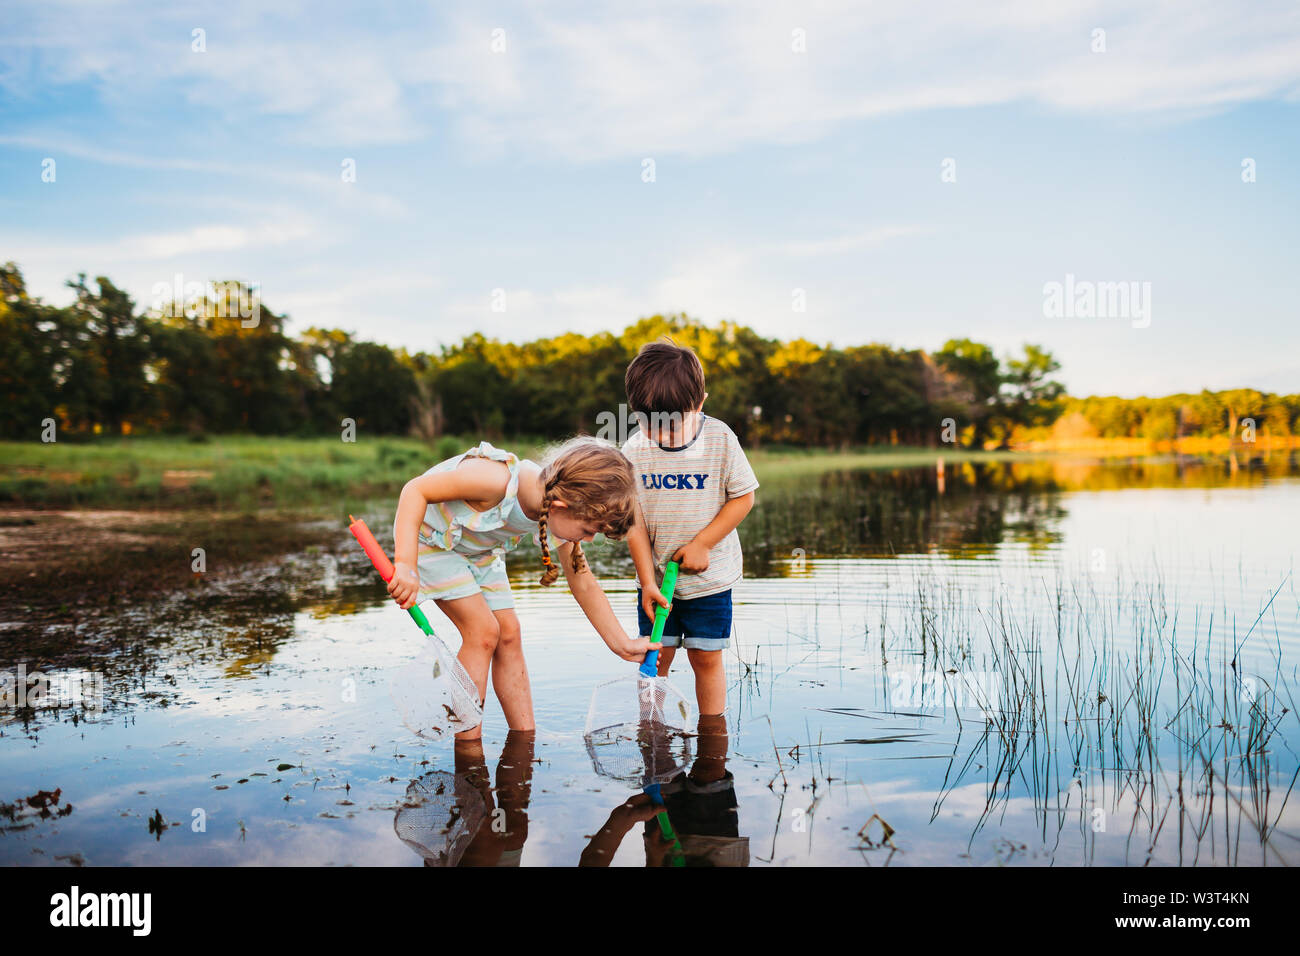 Junge Mädchen helfen jungen einen Fisch in seinem Netz fangen am See Stockfoto